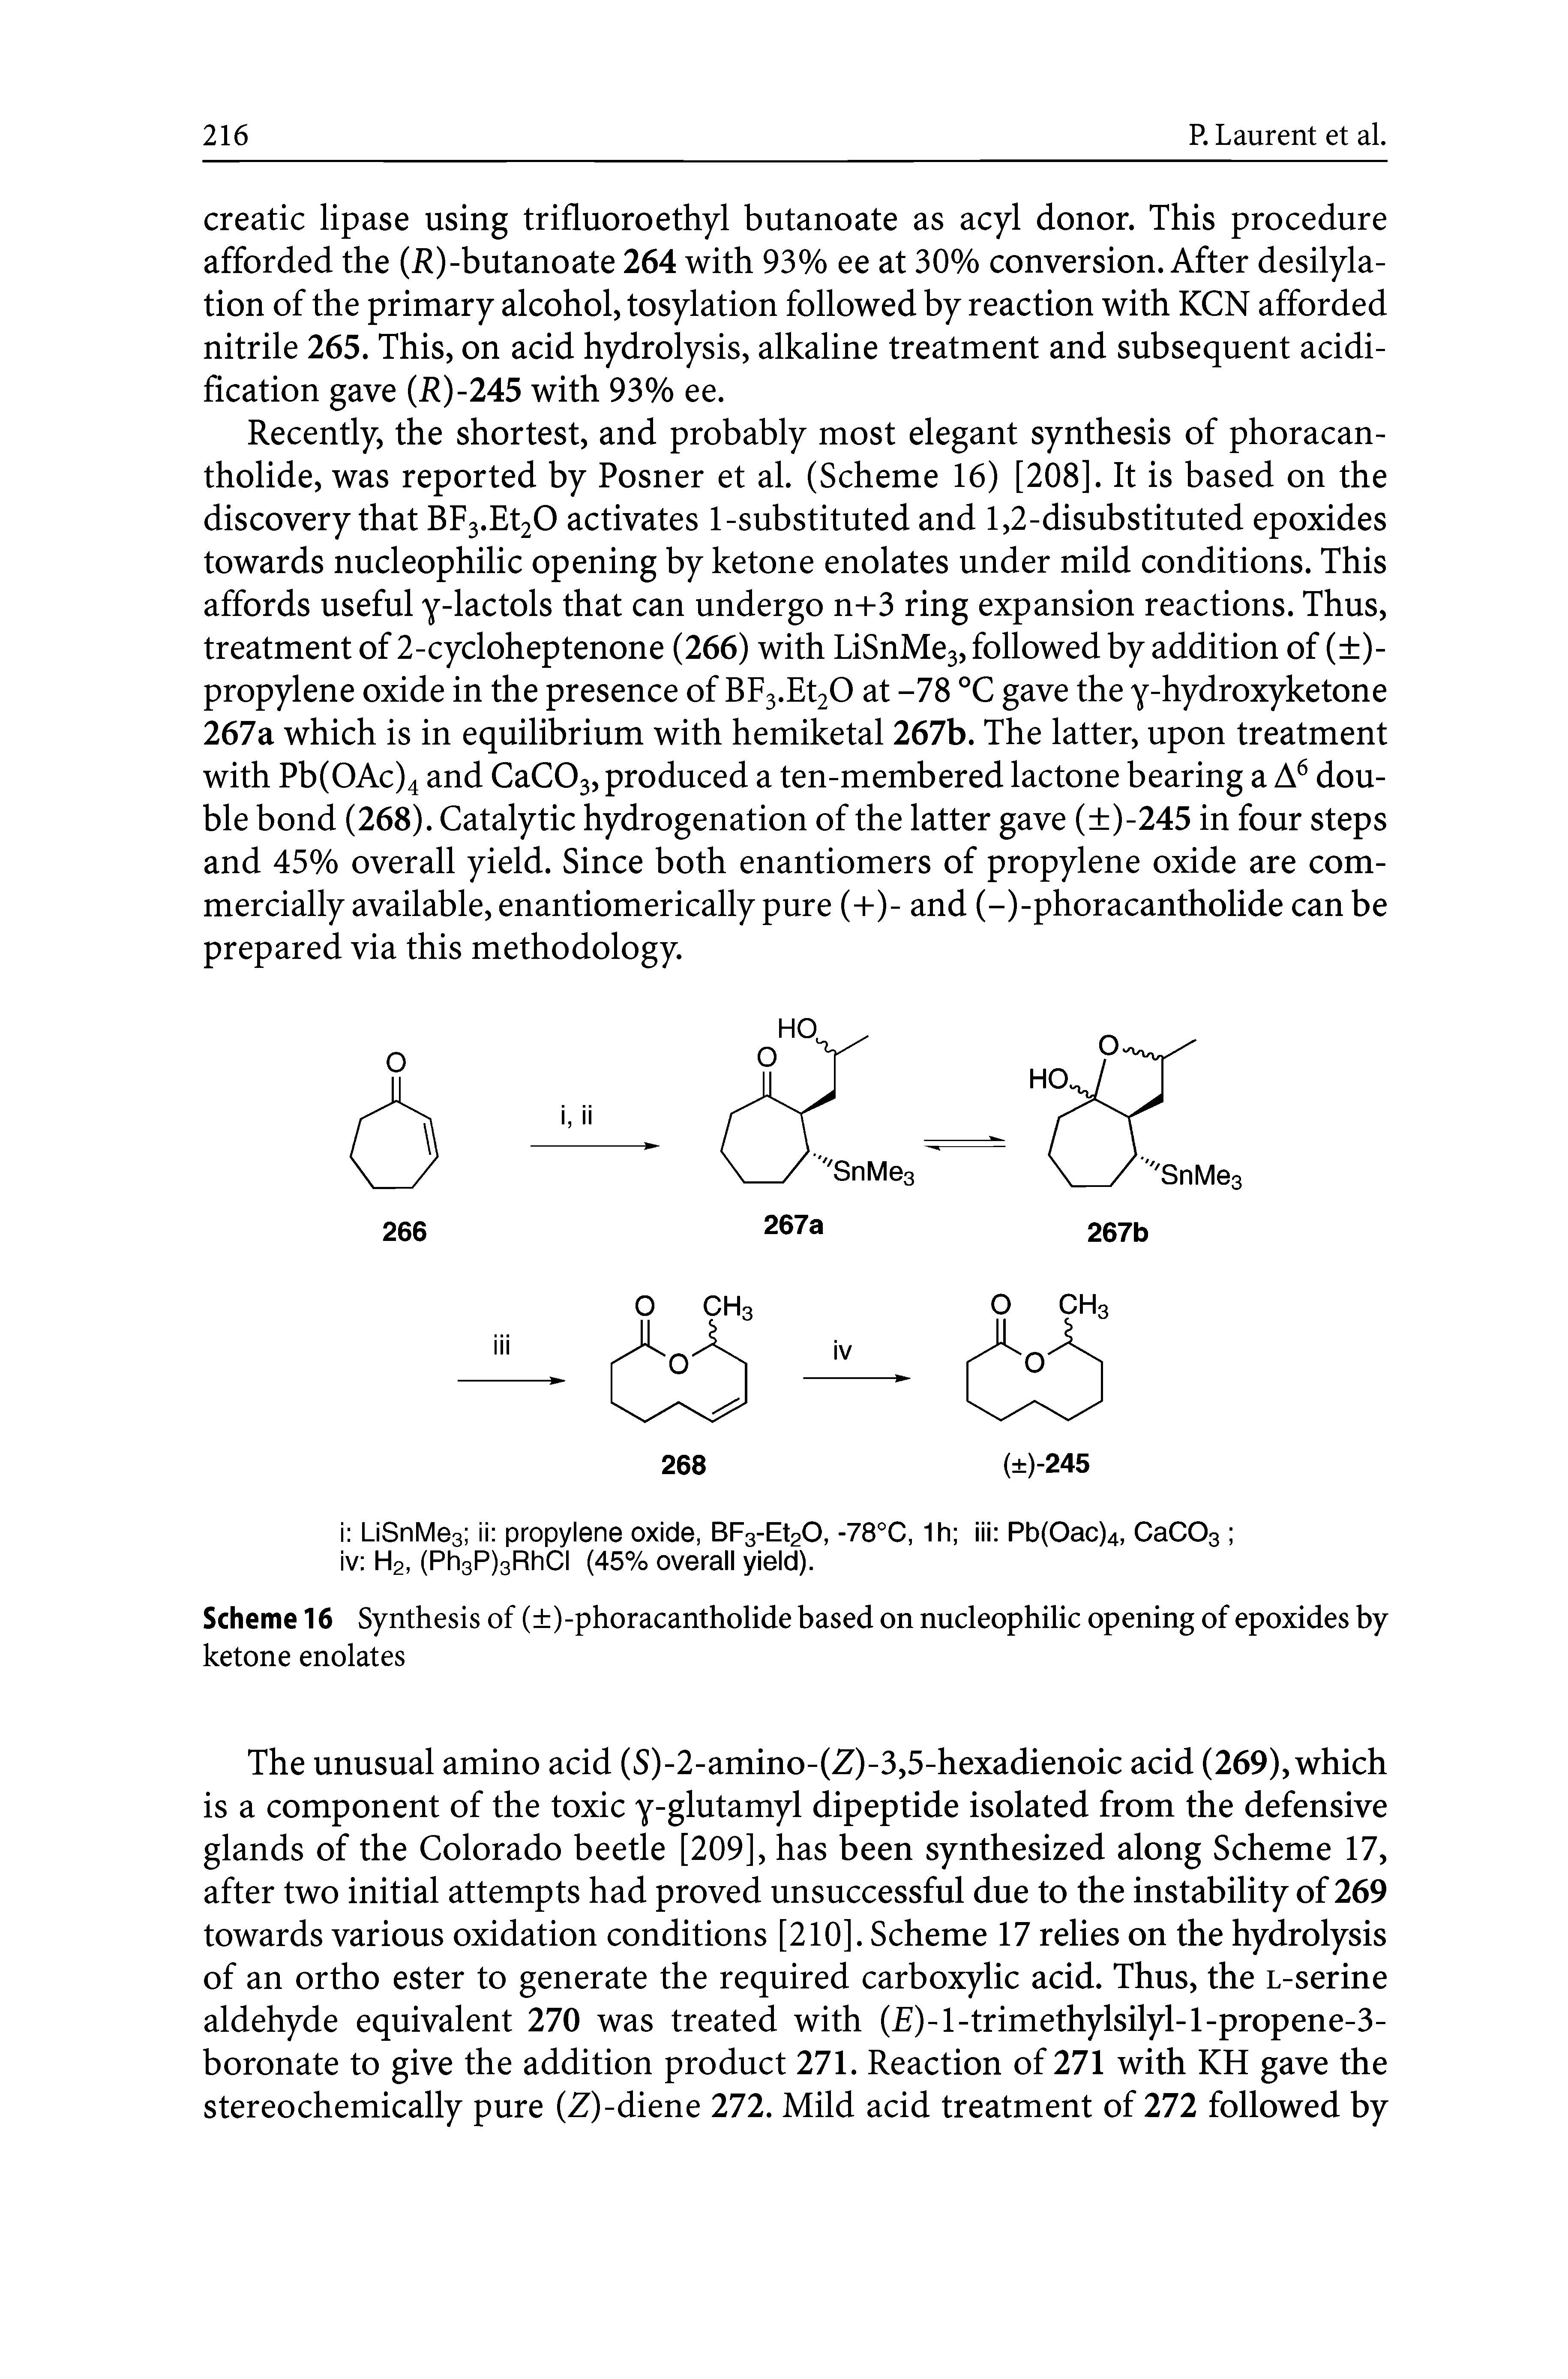 Scheme 16 Synthesis of ( )-phoracantholide based on nucleophilic opening of epoxides by ketone enolates...